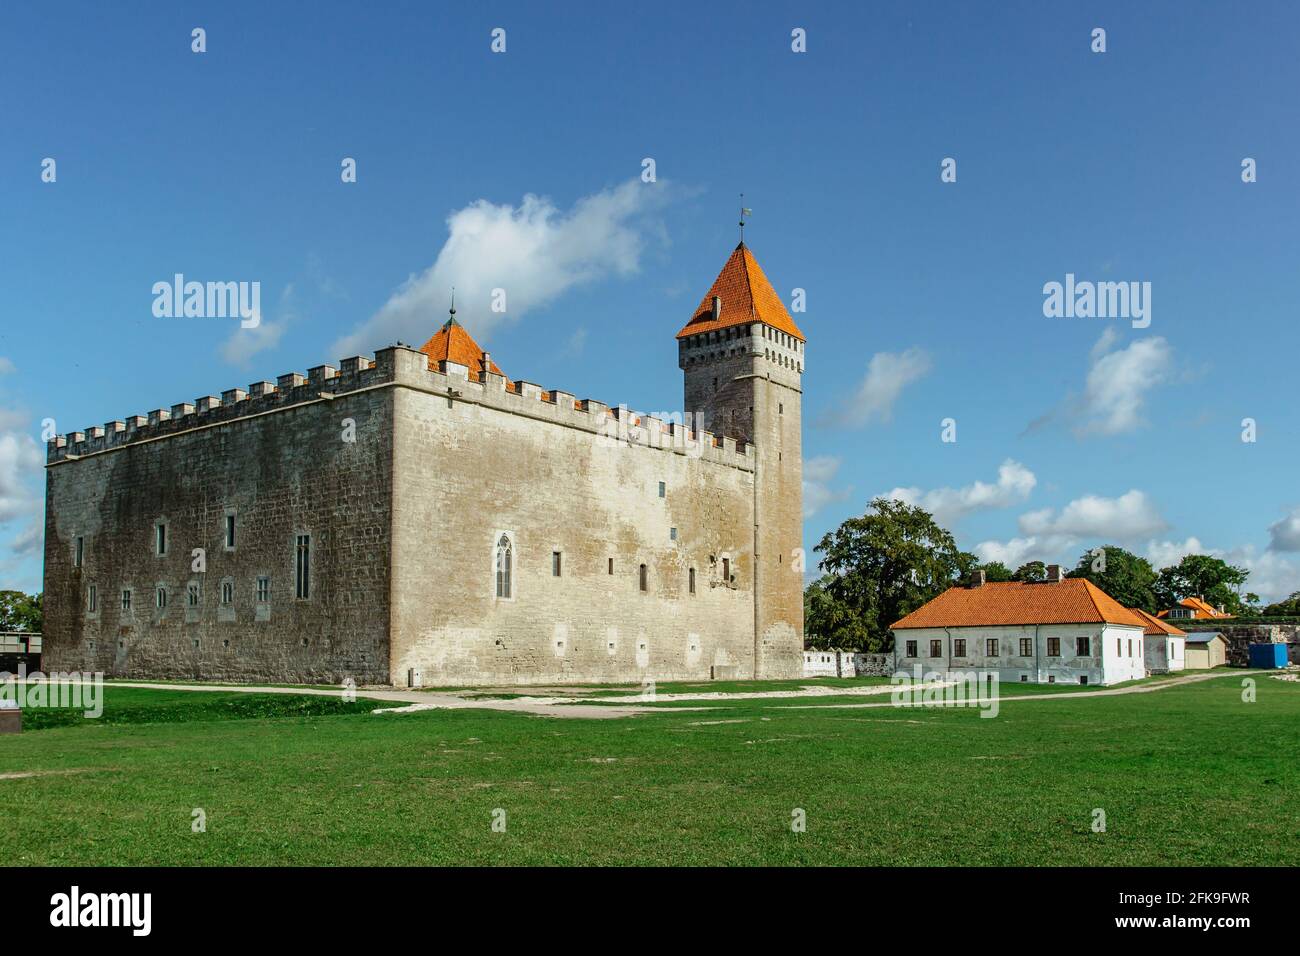 Castello episcopale di Koressaare sull'isola di Saaremaa, Estonia.fortificazione medievale in stile tardo gotico con Bastion.Sightseeing nei Baltici. Foto Stock